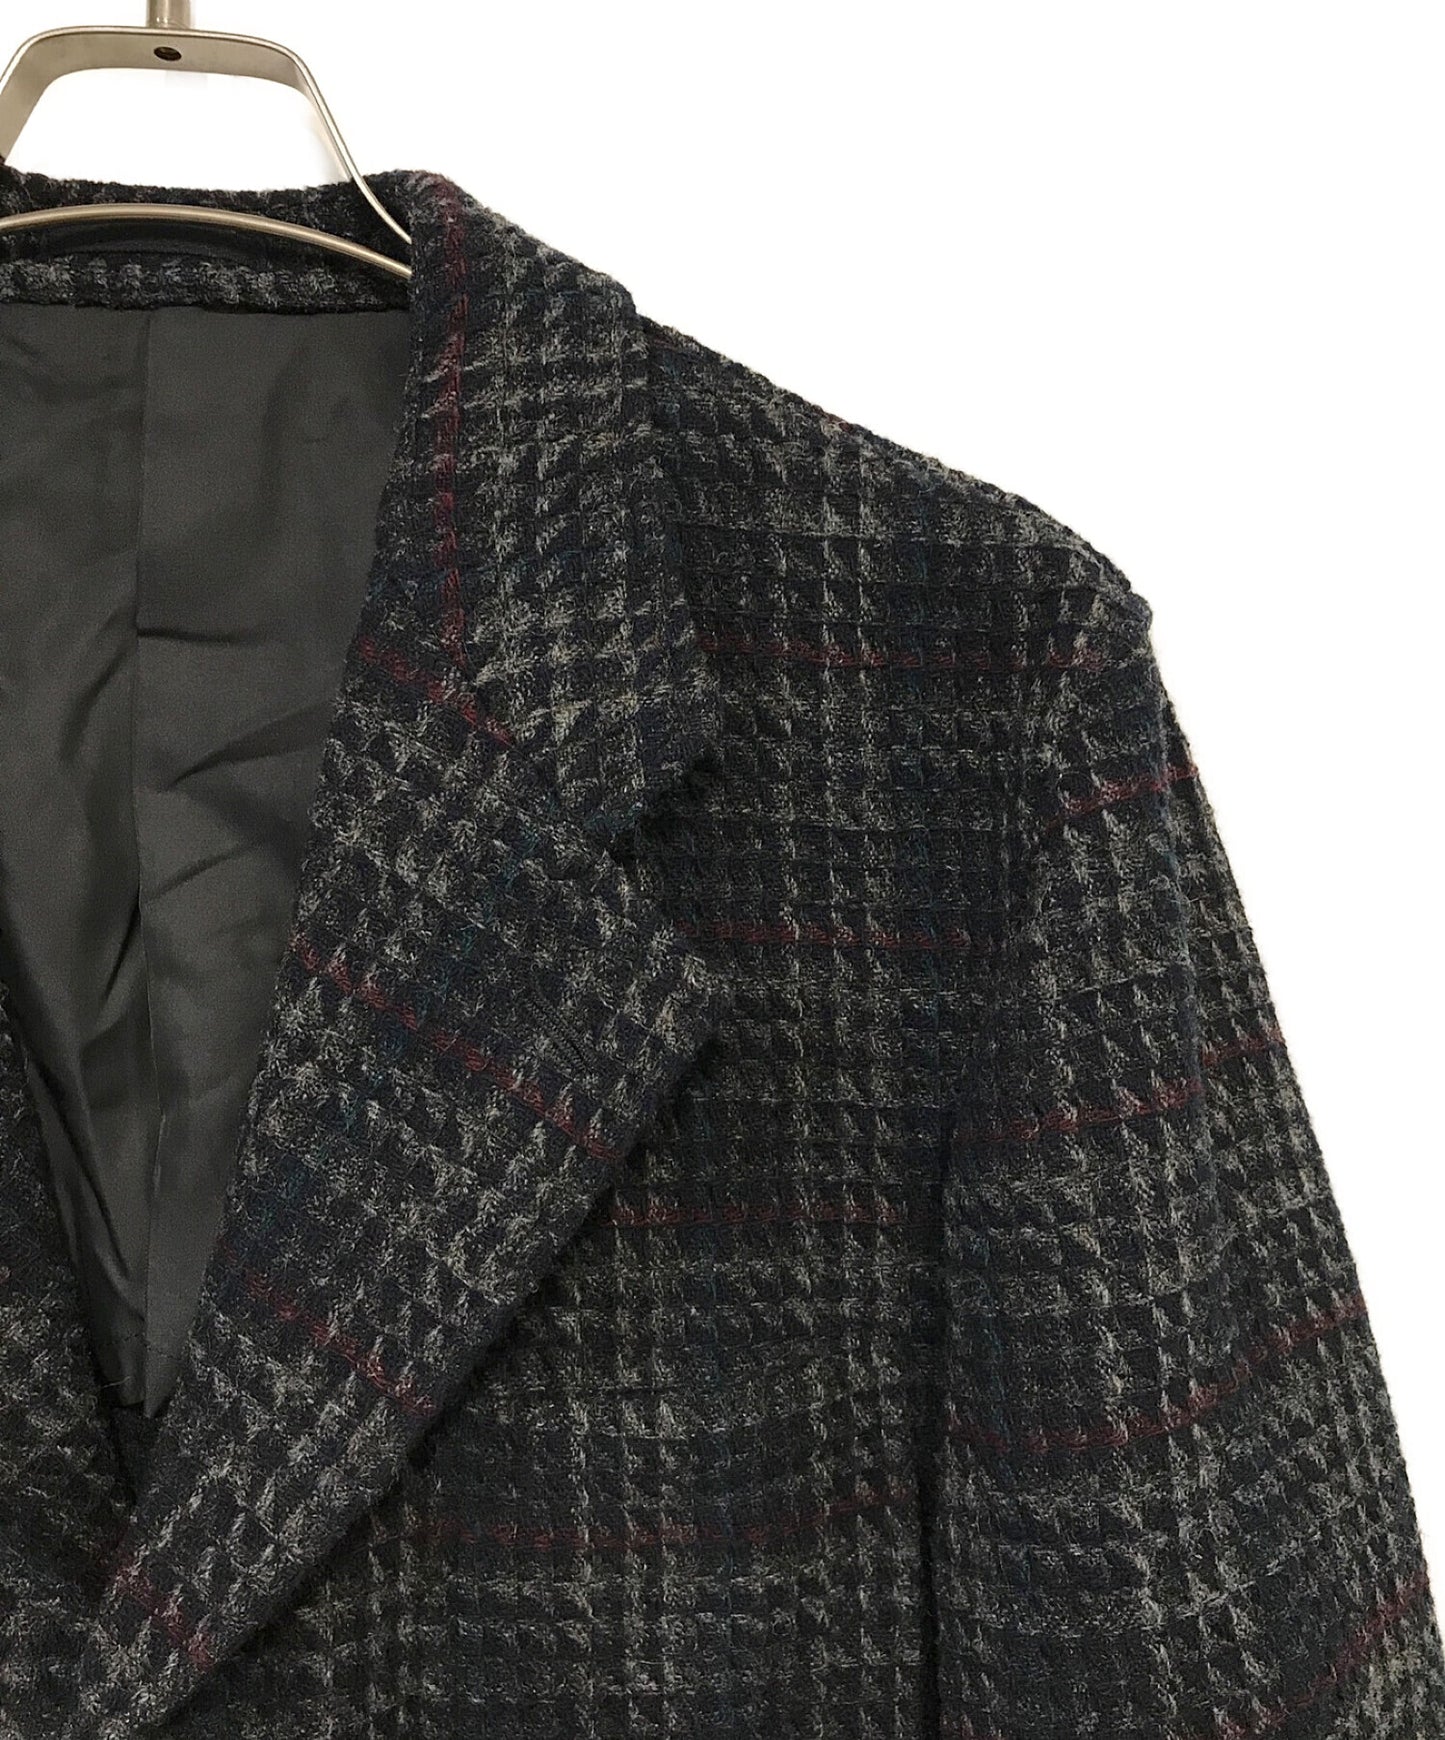 COMME des GARCONS HOMME Vintage wool jacket HJ-07025L